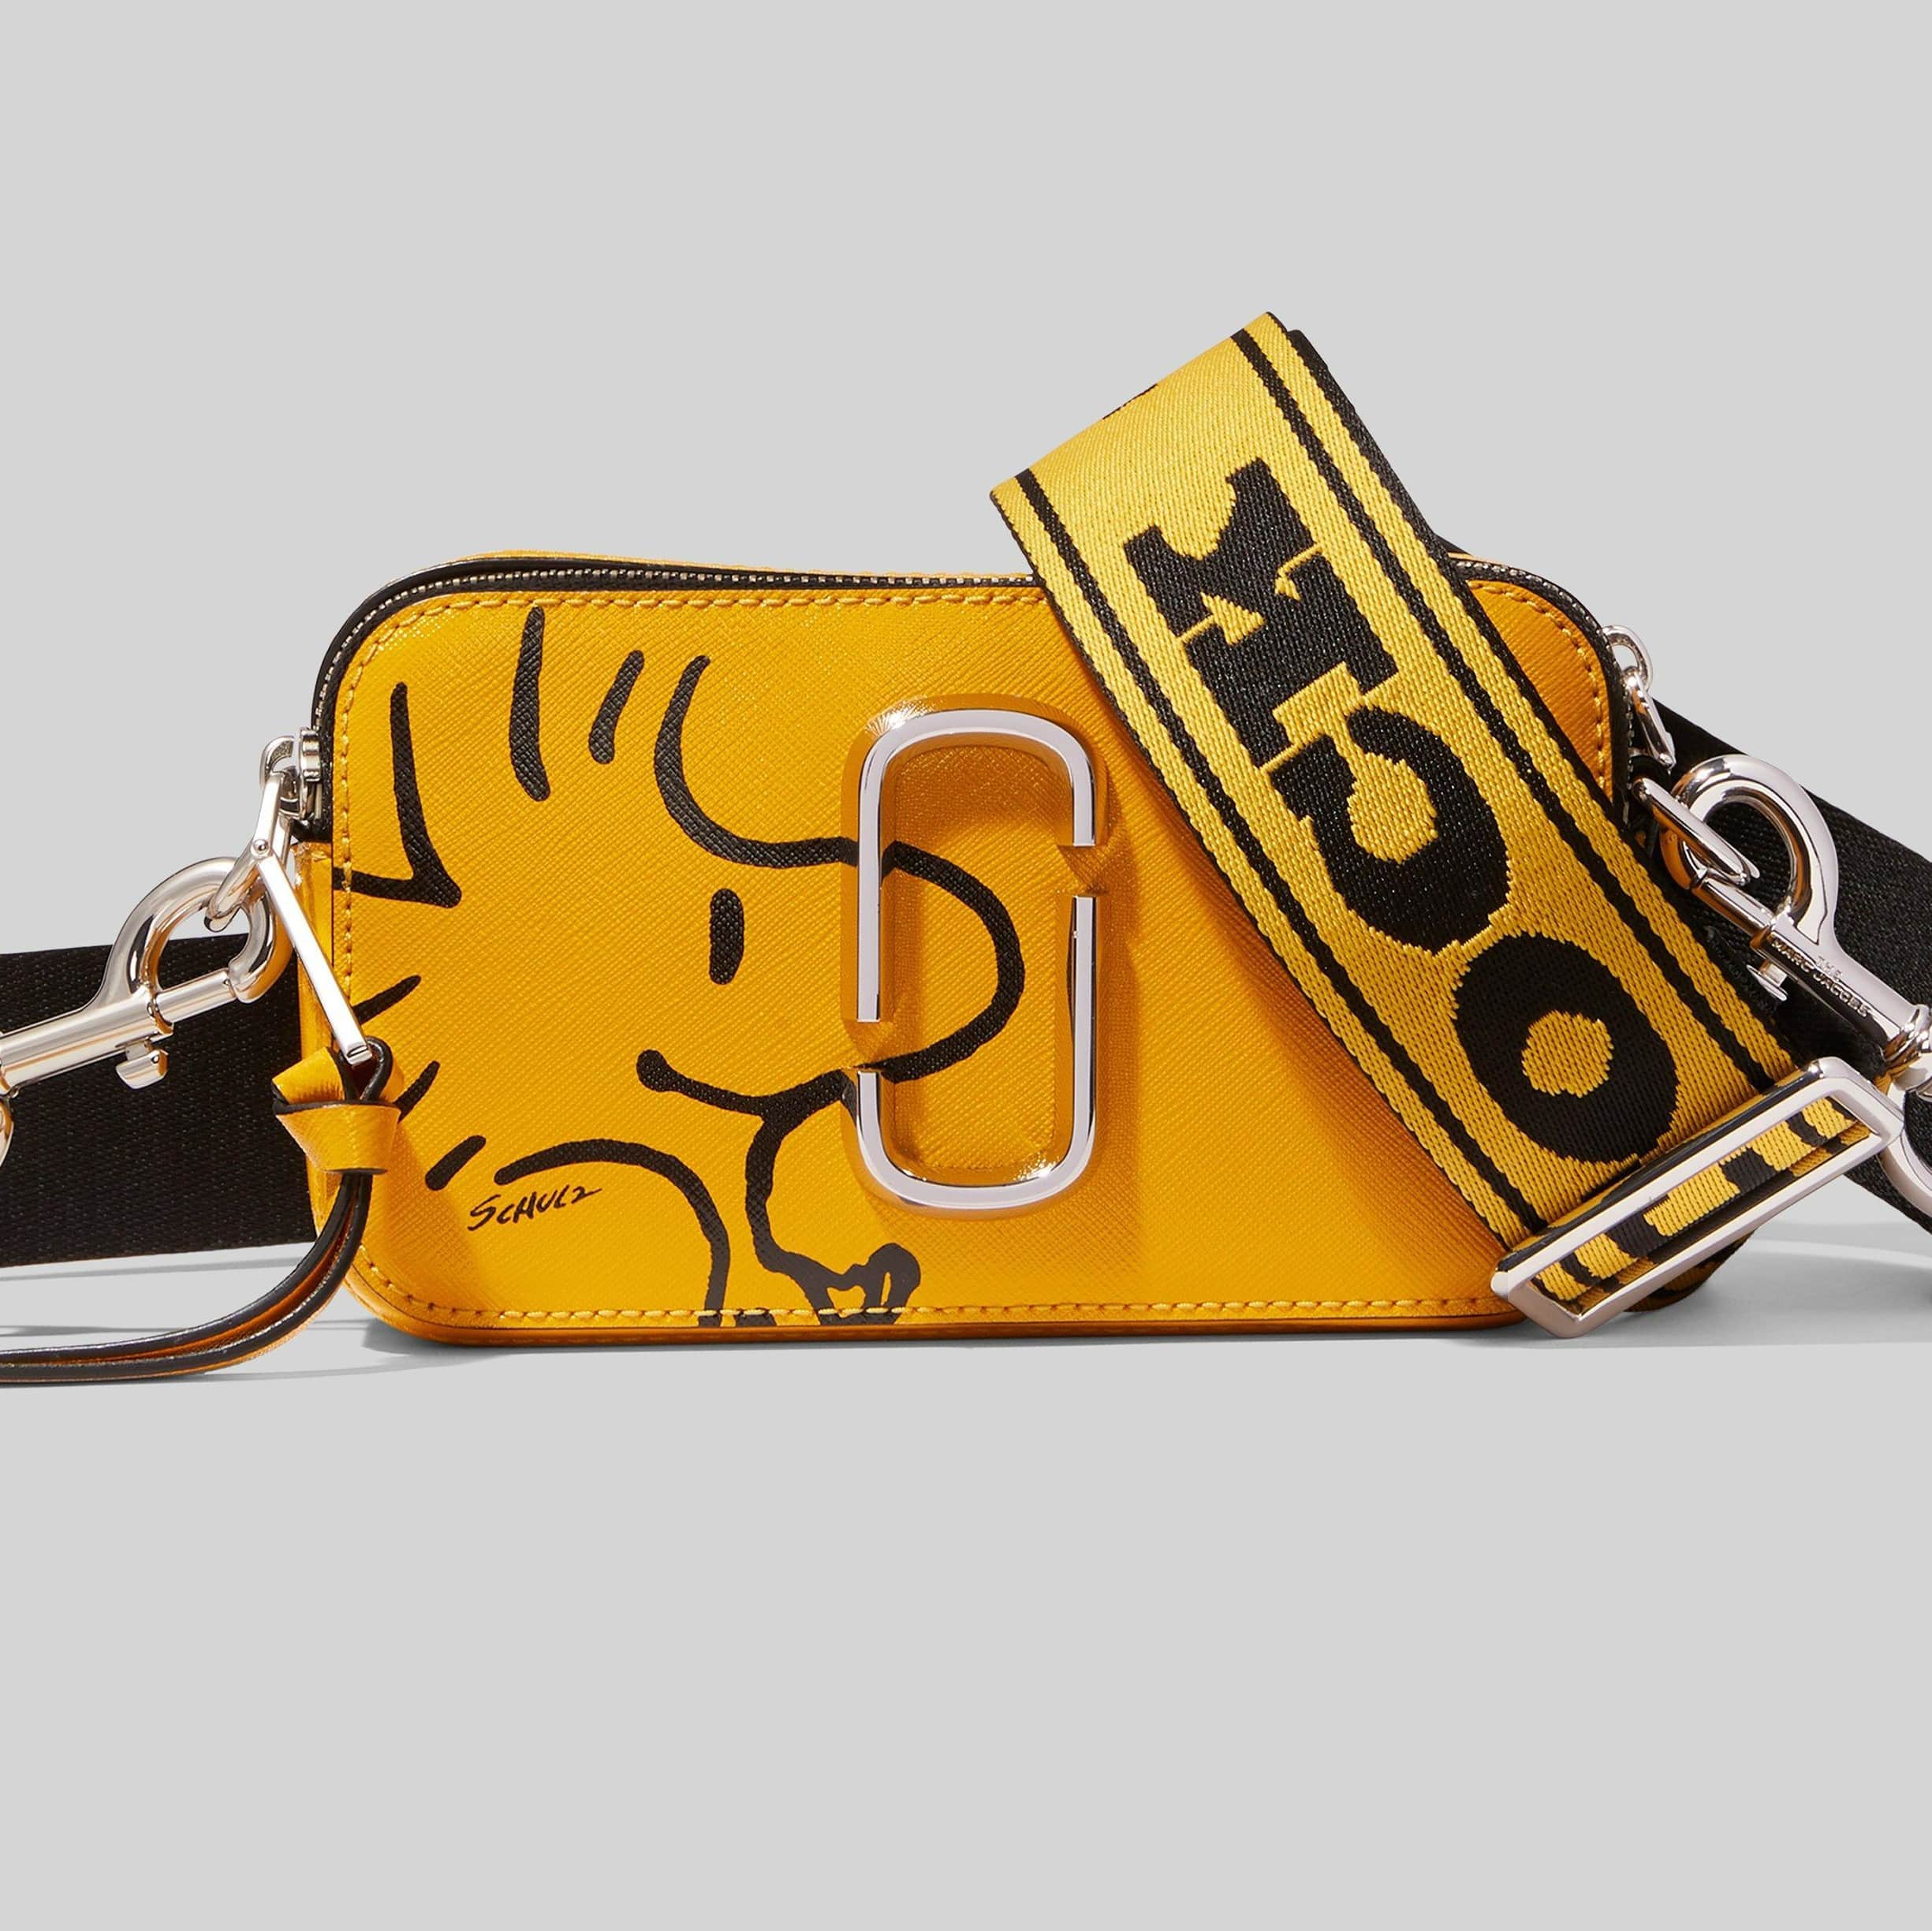 Túi xách nữ The Marc Jacobs x Peanuts Woodstock Snoopy màu vàng chính hãng 2